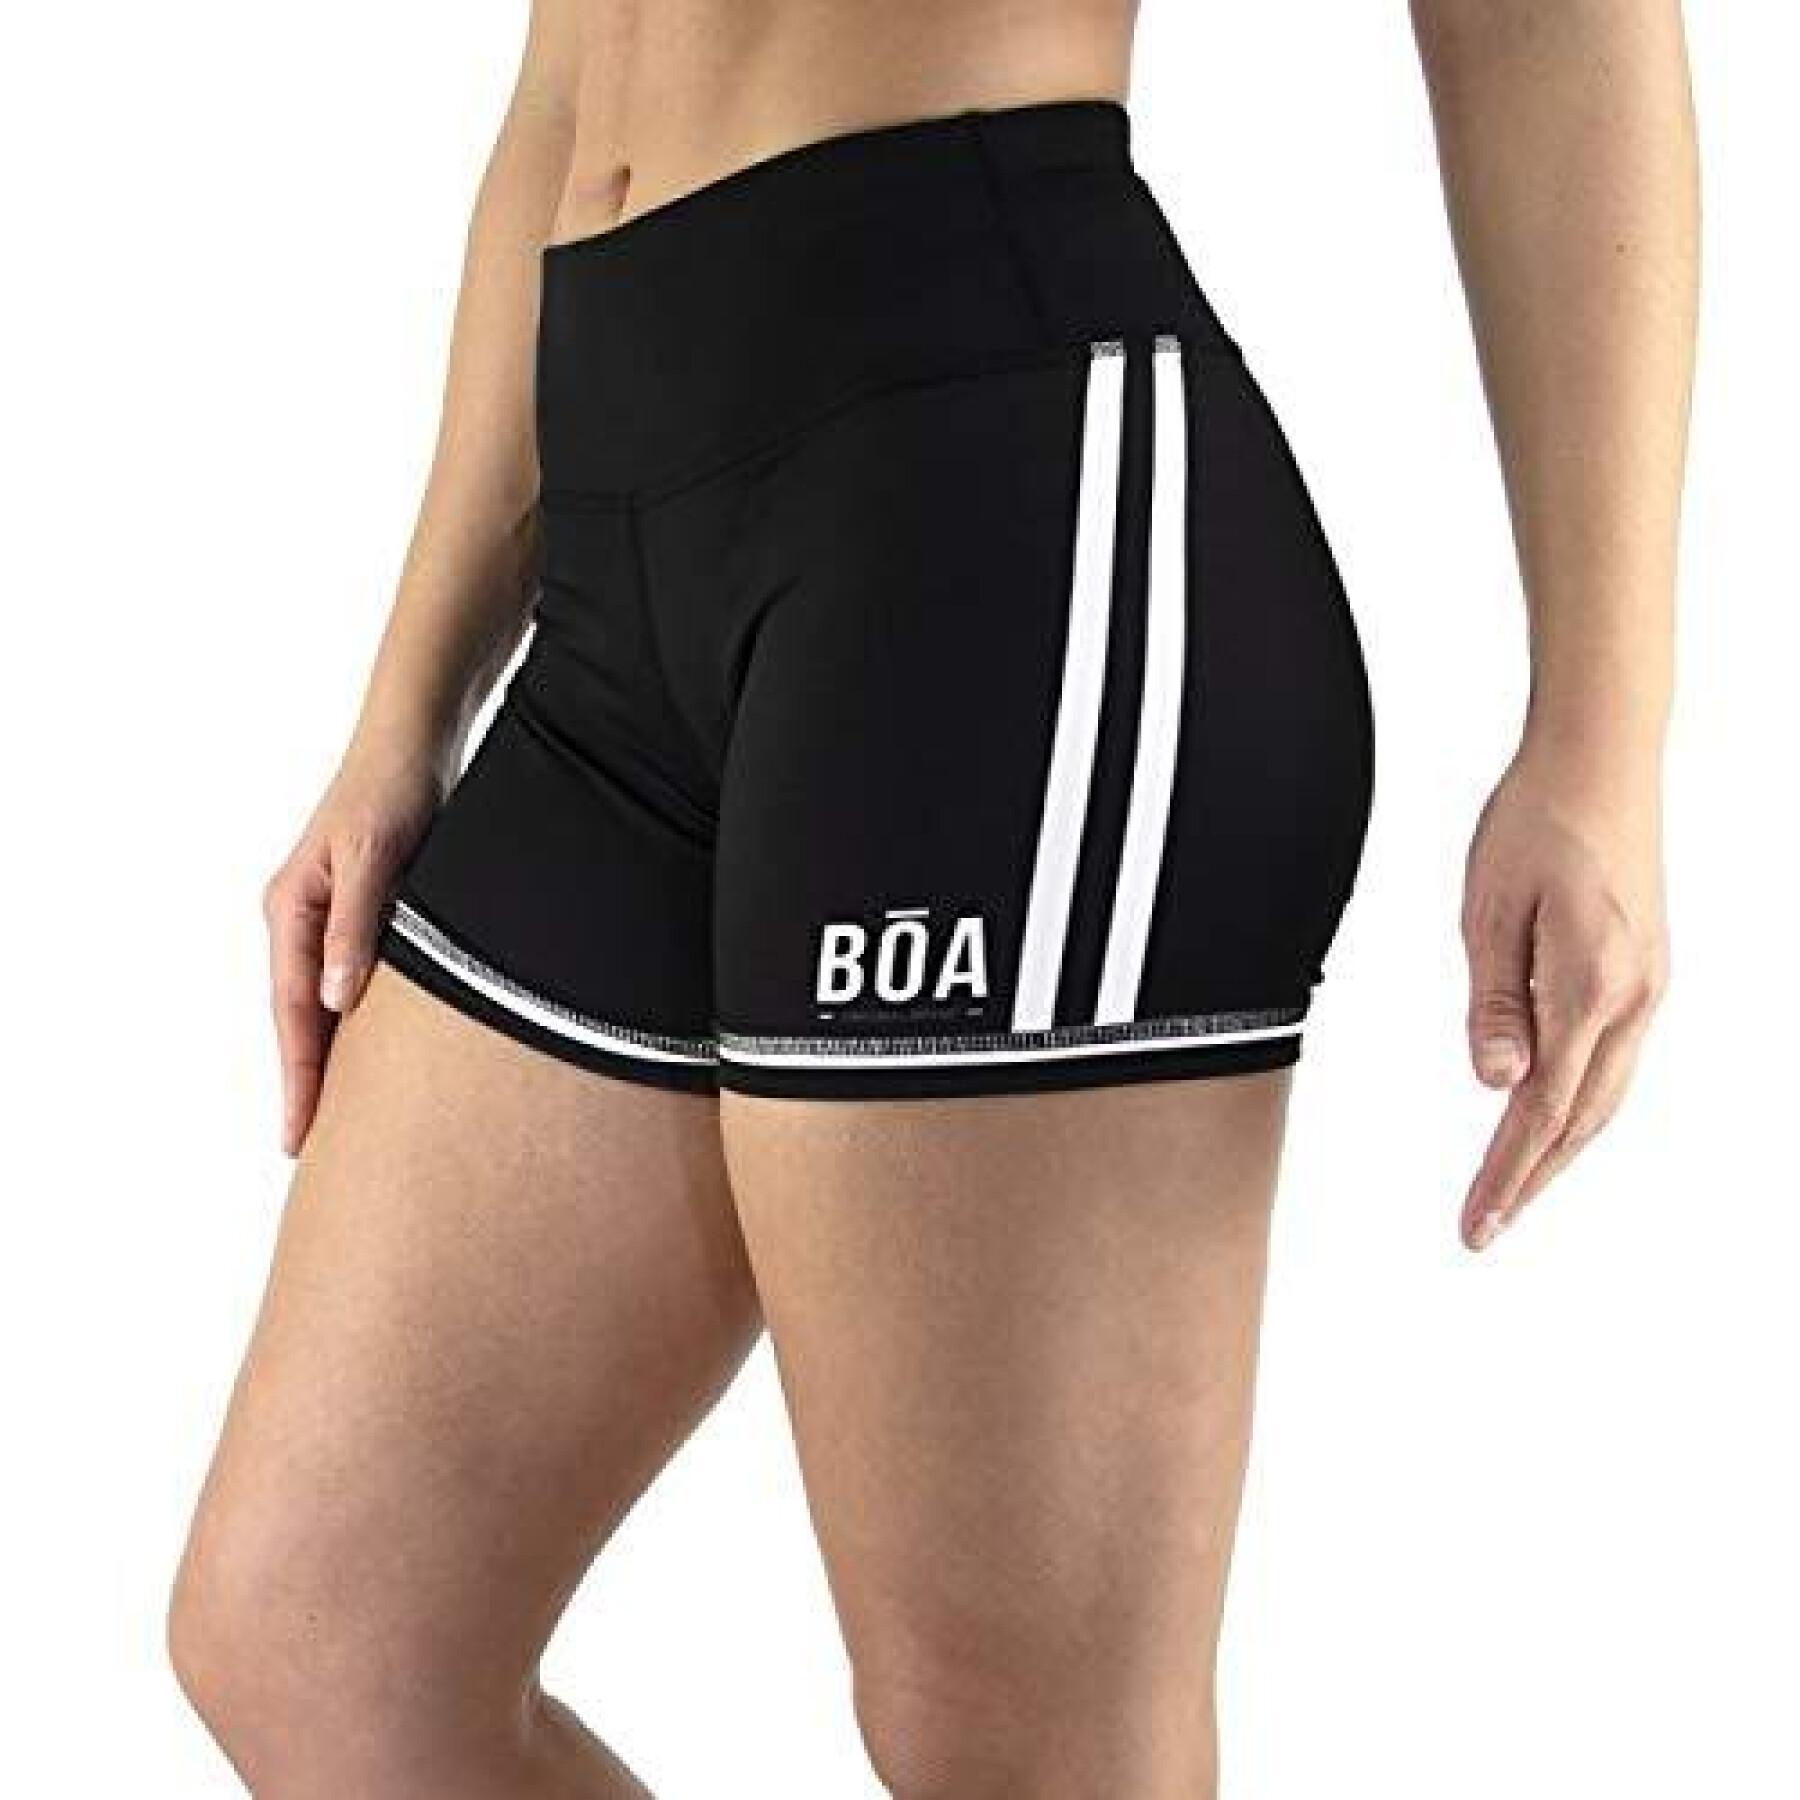 Women's compression shorts Bõa Estilo